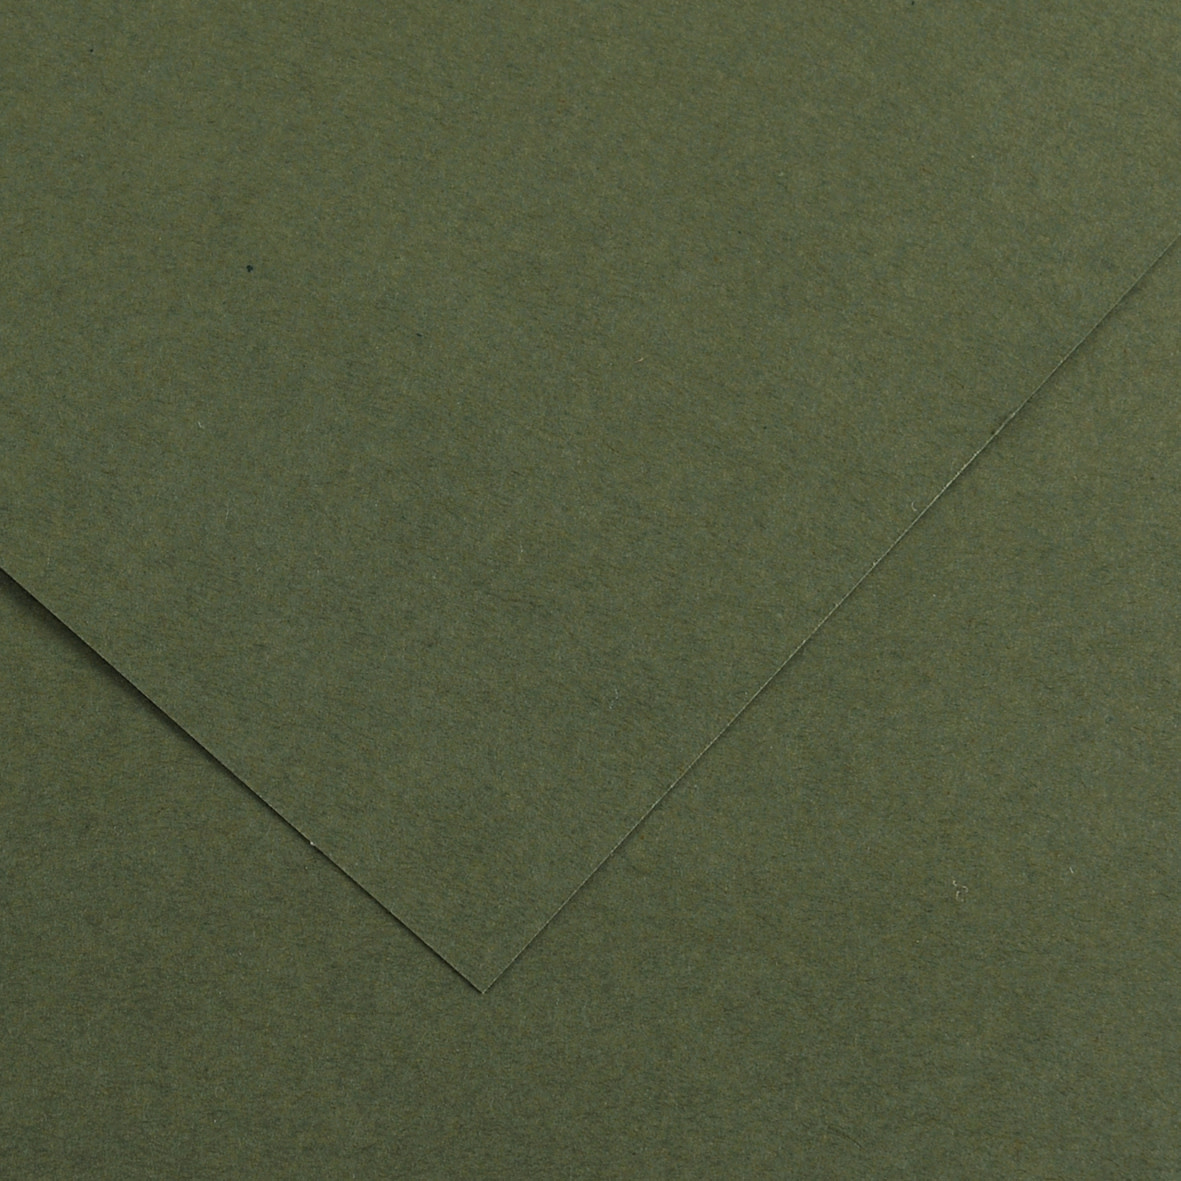 stof in de ogen gooien Gymnastiek Sophie Colorline Paper Khaki Green 19.5"x25.5" 300gsm - RISD Store